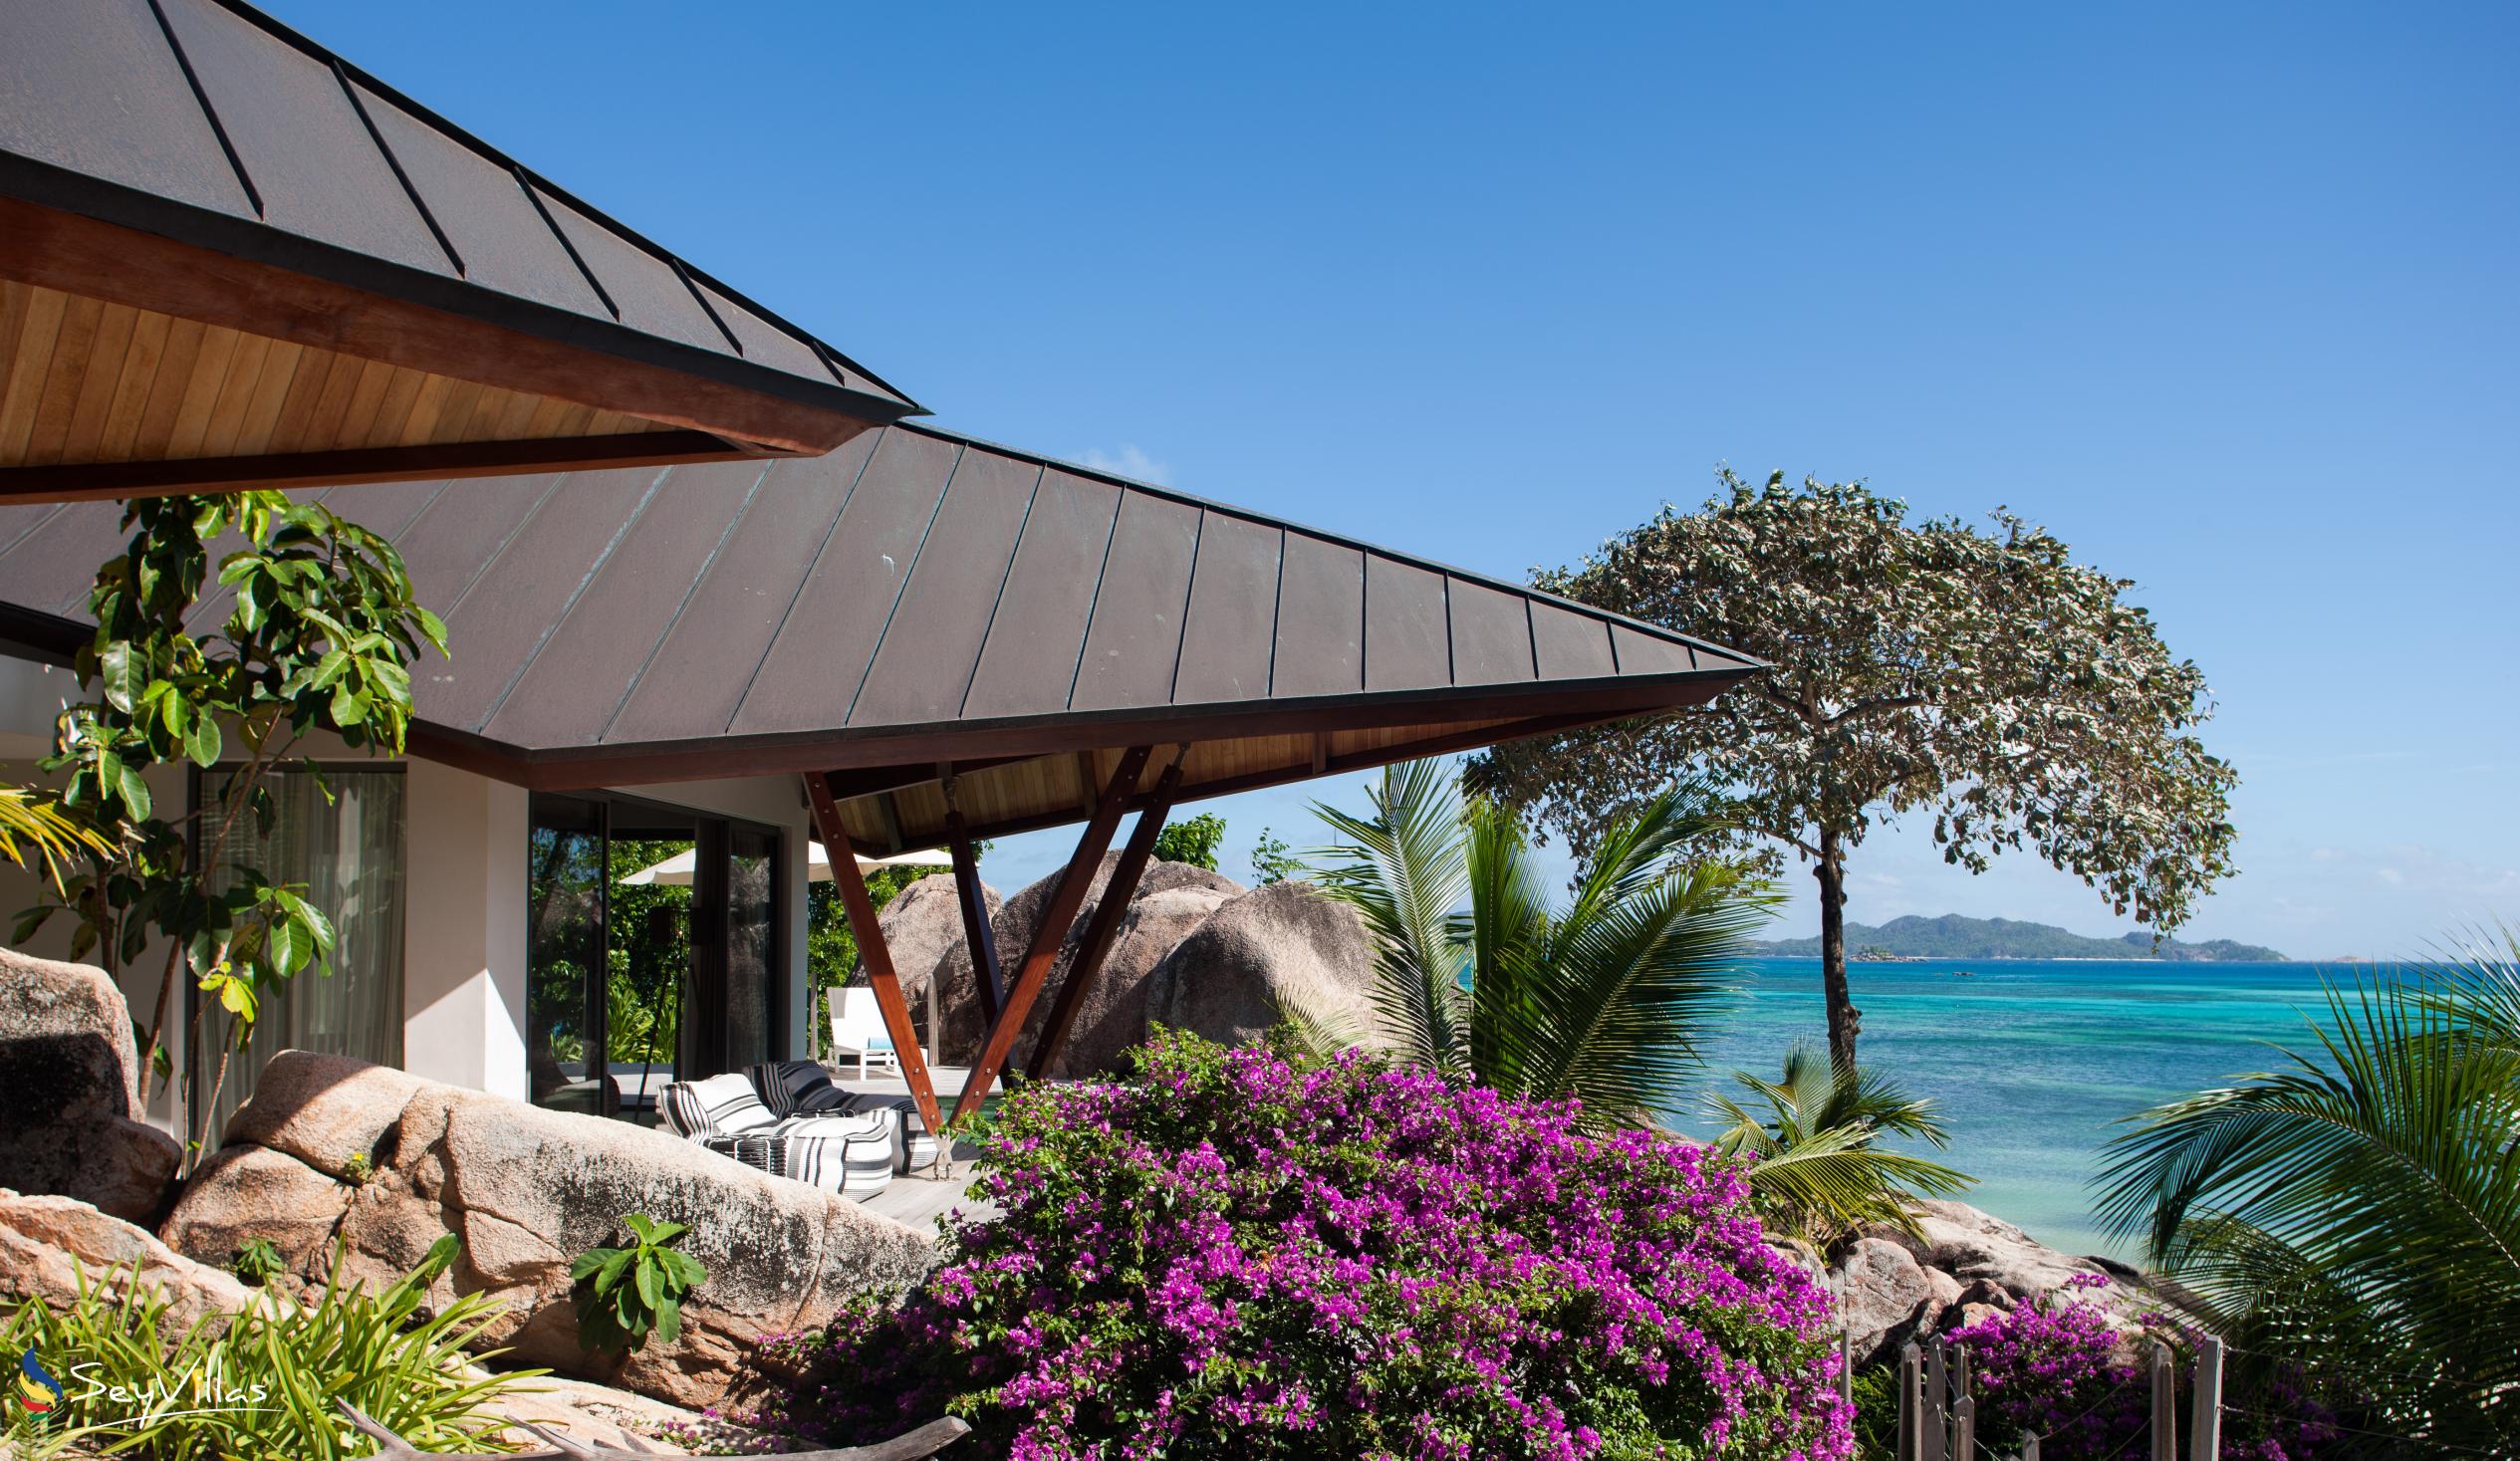 Foto 16: Villa Deckenia - Aussenbereich - Praslin (Seychellen)